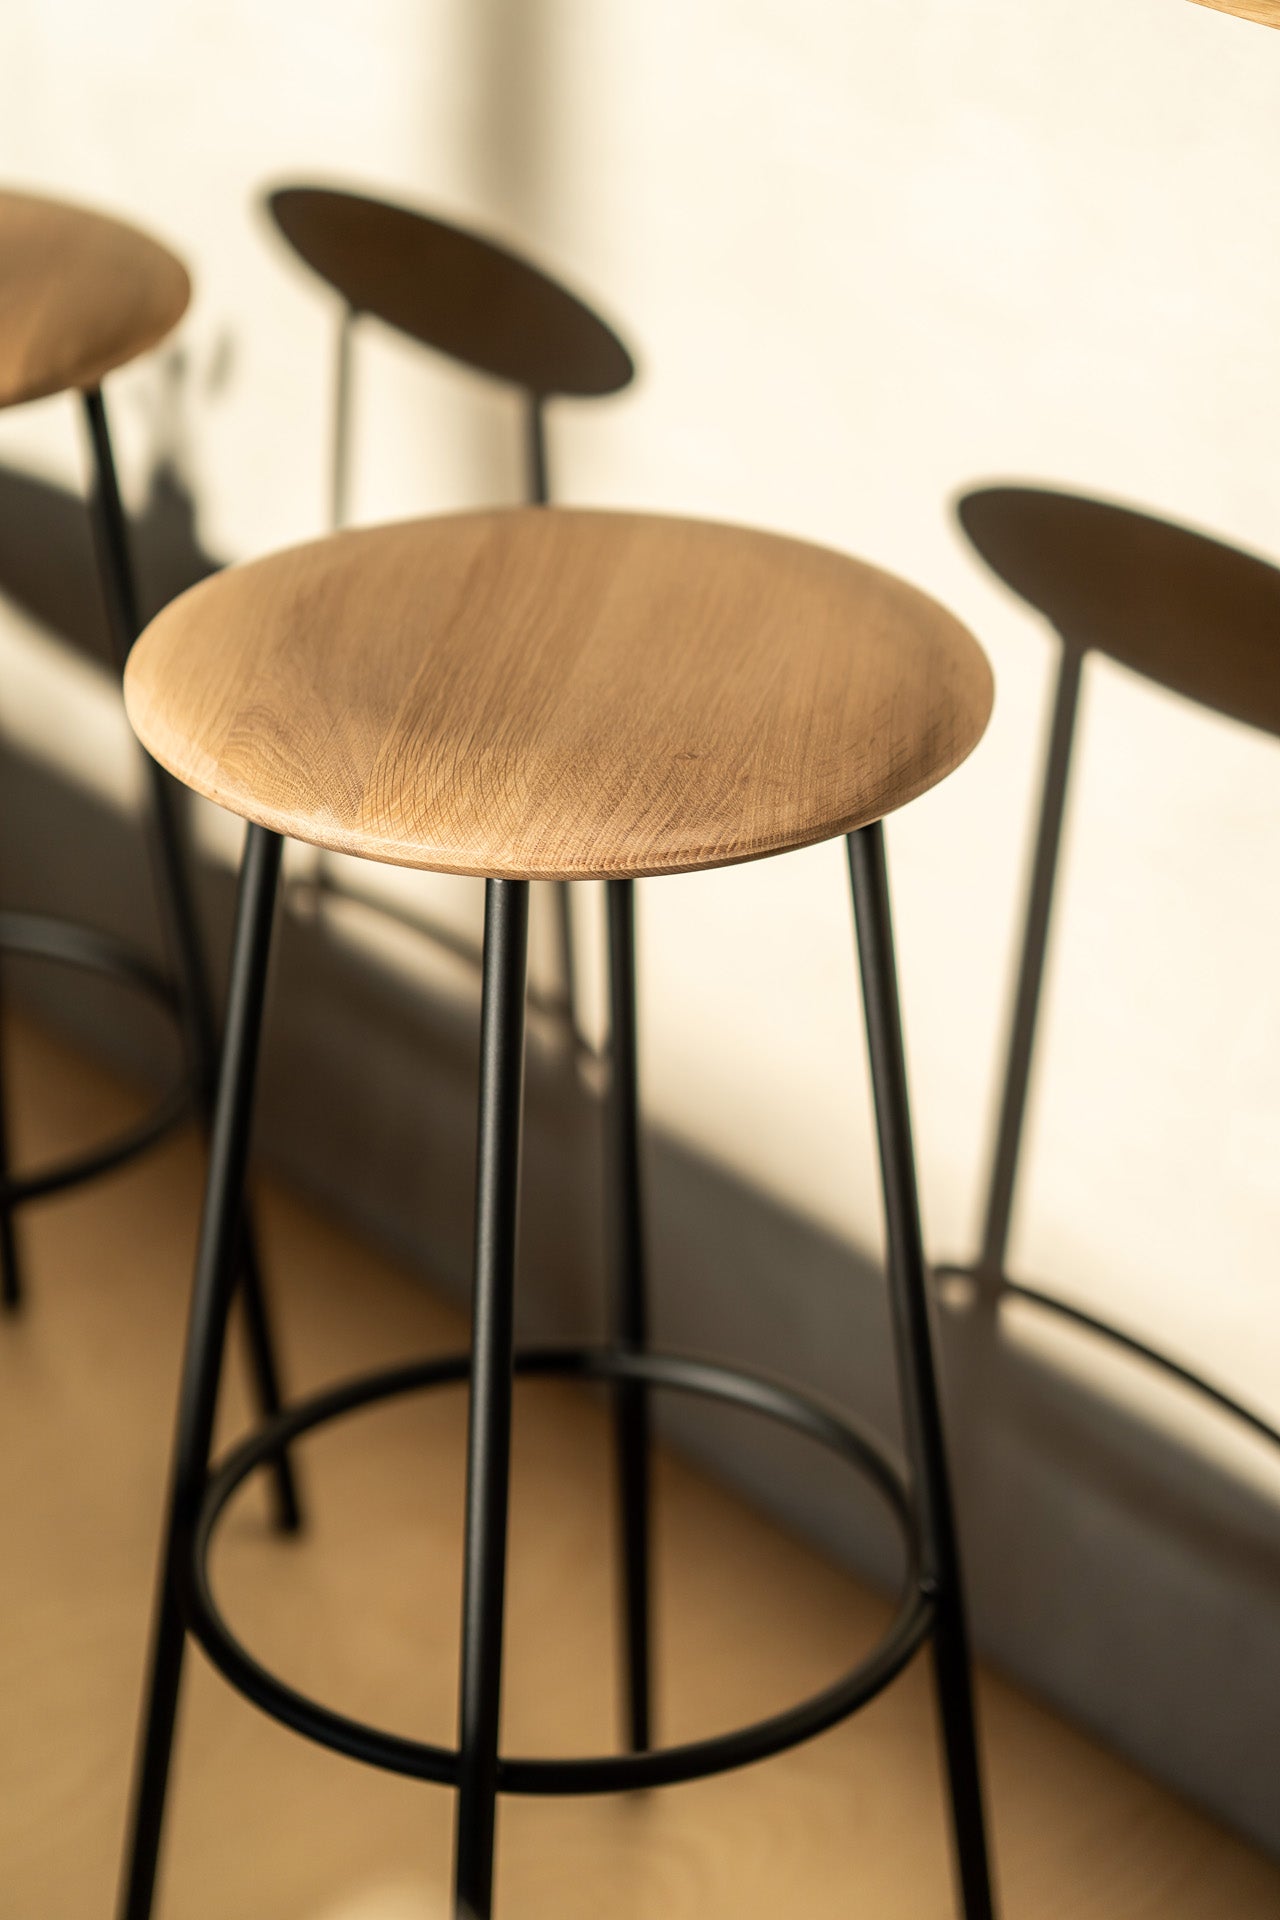 比利時原裝進口實木傢俬 - 座椅系列 - Baretto系列橡木吧台凳